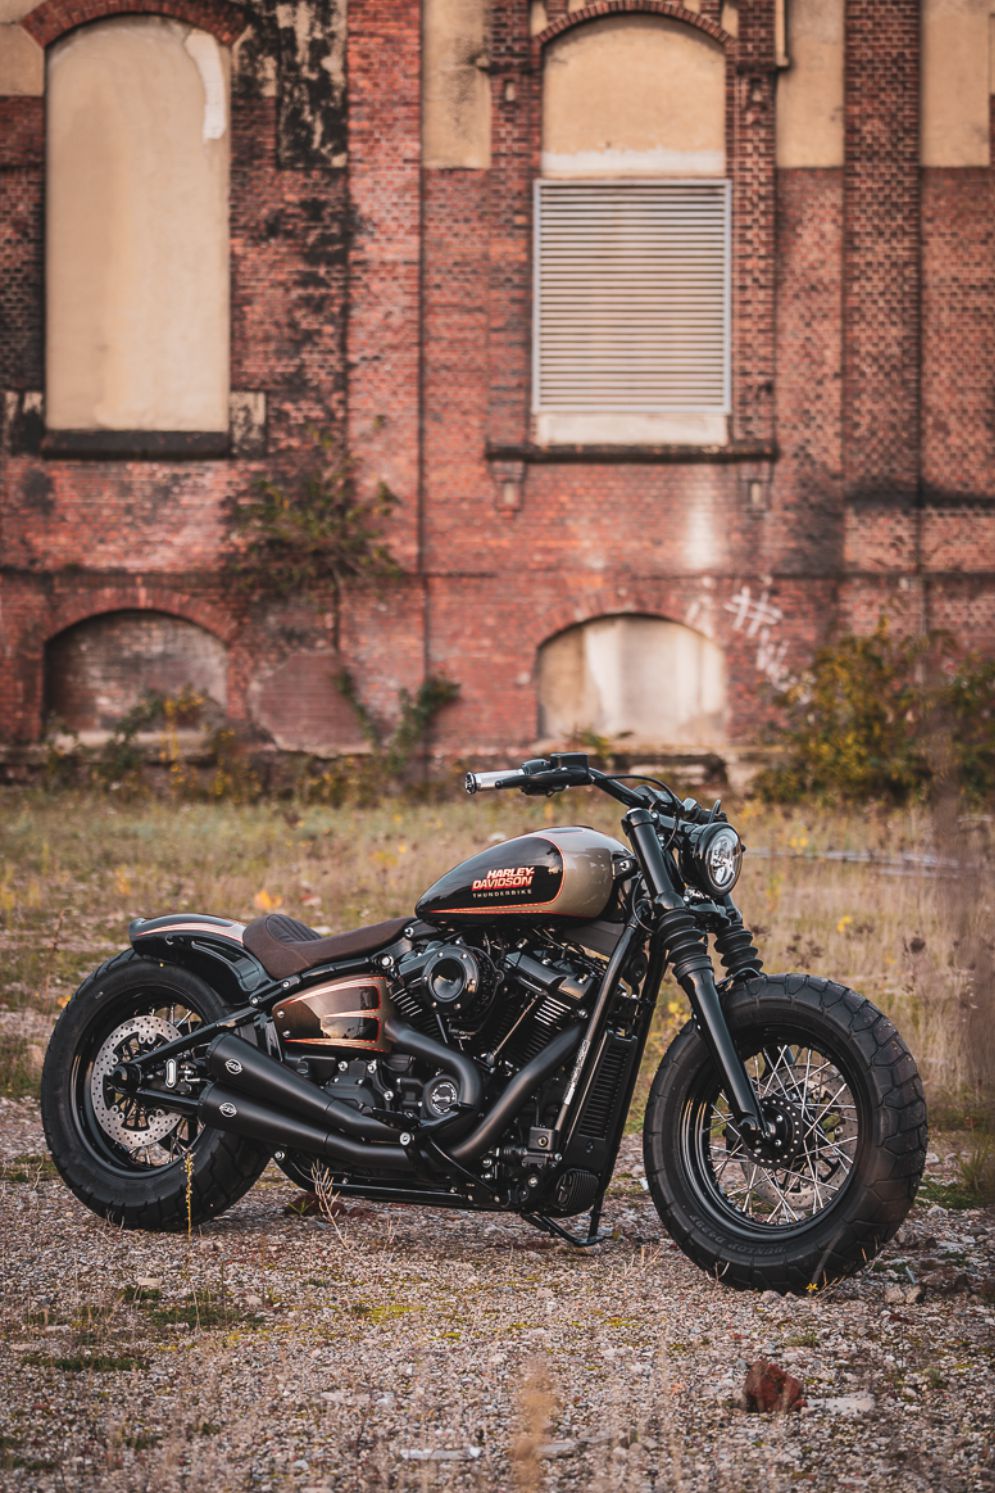 Harley Davidson - Thunderbike